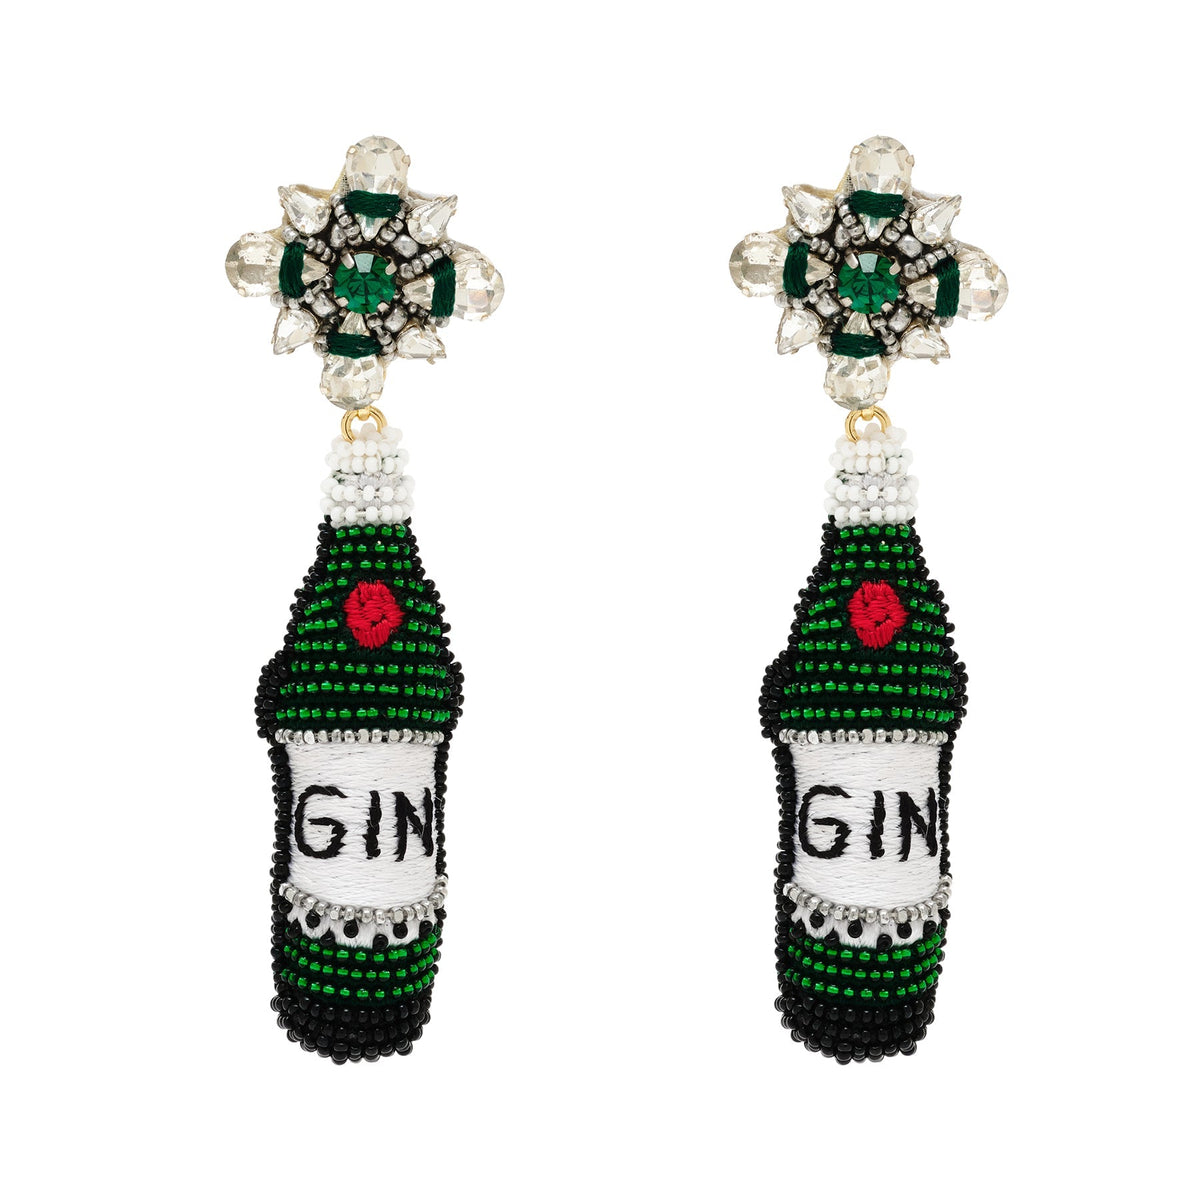 Gin Bottle Earrings in Green